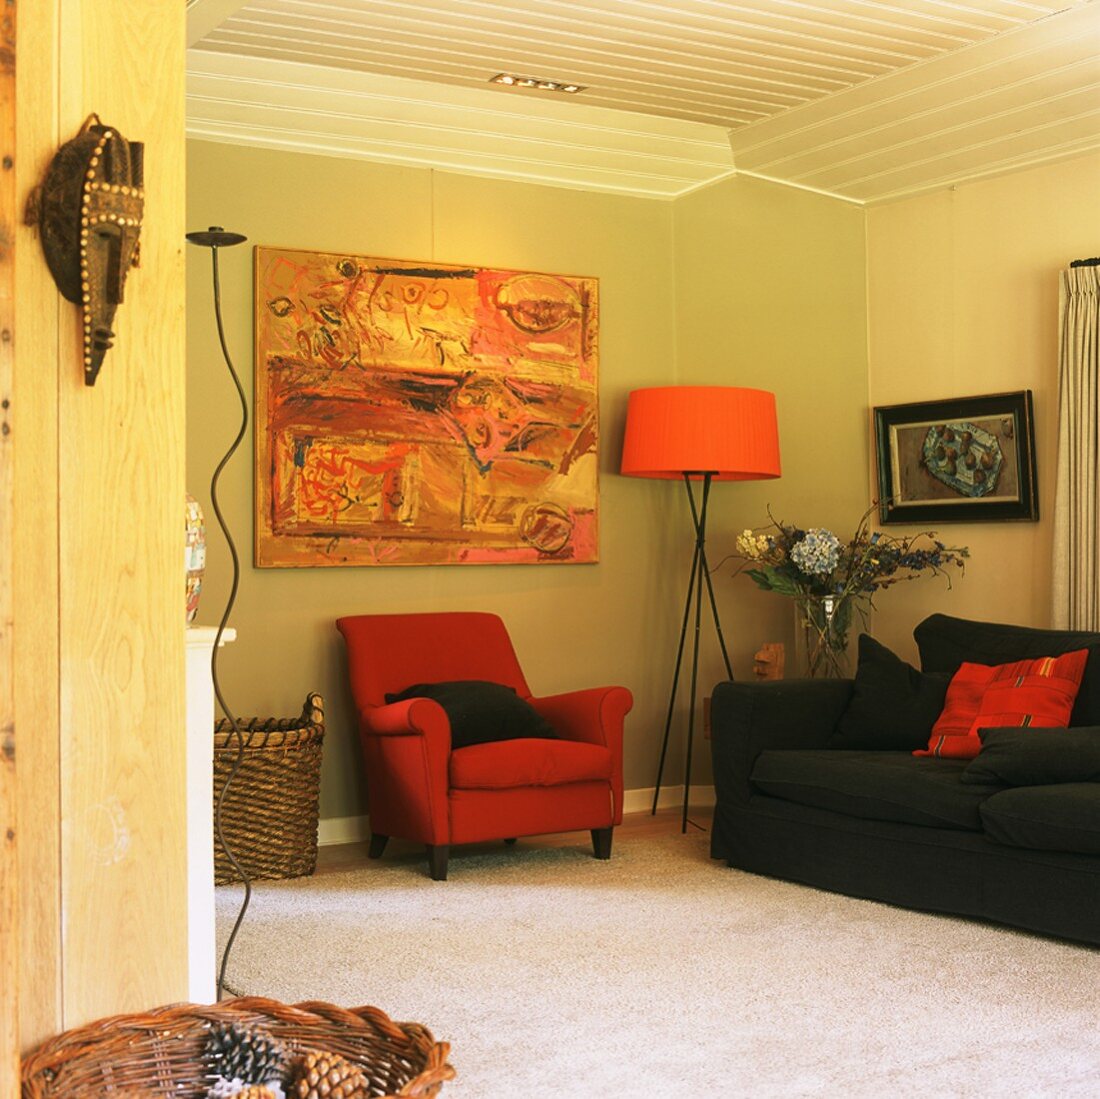 Gemütliche Wohnraumecke mit Polstermöbel, modernem Gemälde und orangefarbener Stehlampe